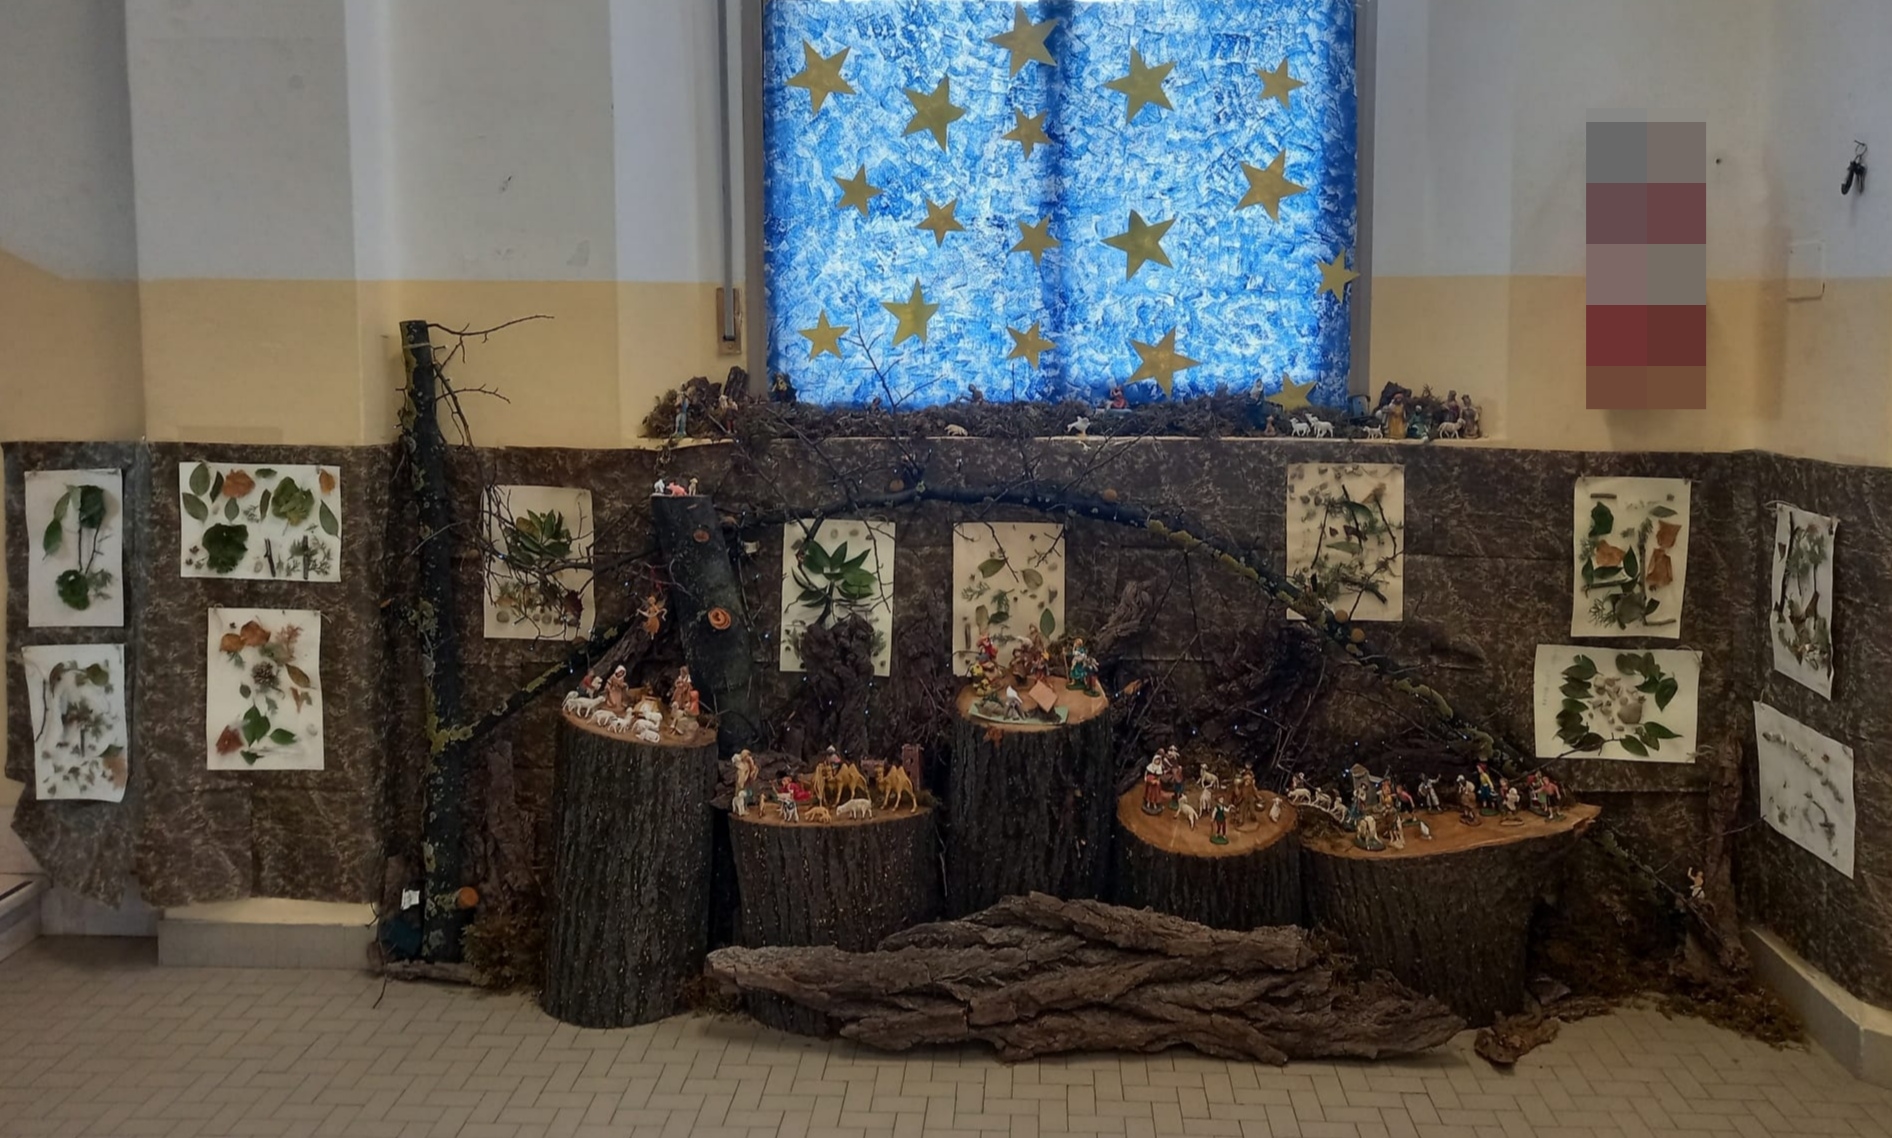 Il presepio della scuola de Amicis: le statuine sono disposte sui pezzi di tronco di un albero. Sullo sfondo la carta color verde/marrone con applicate foglie di varie piante